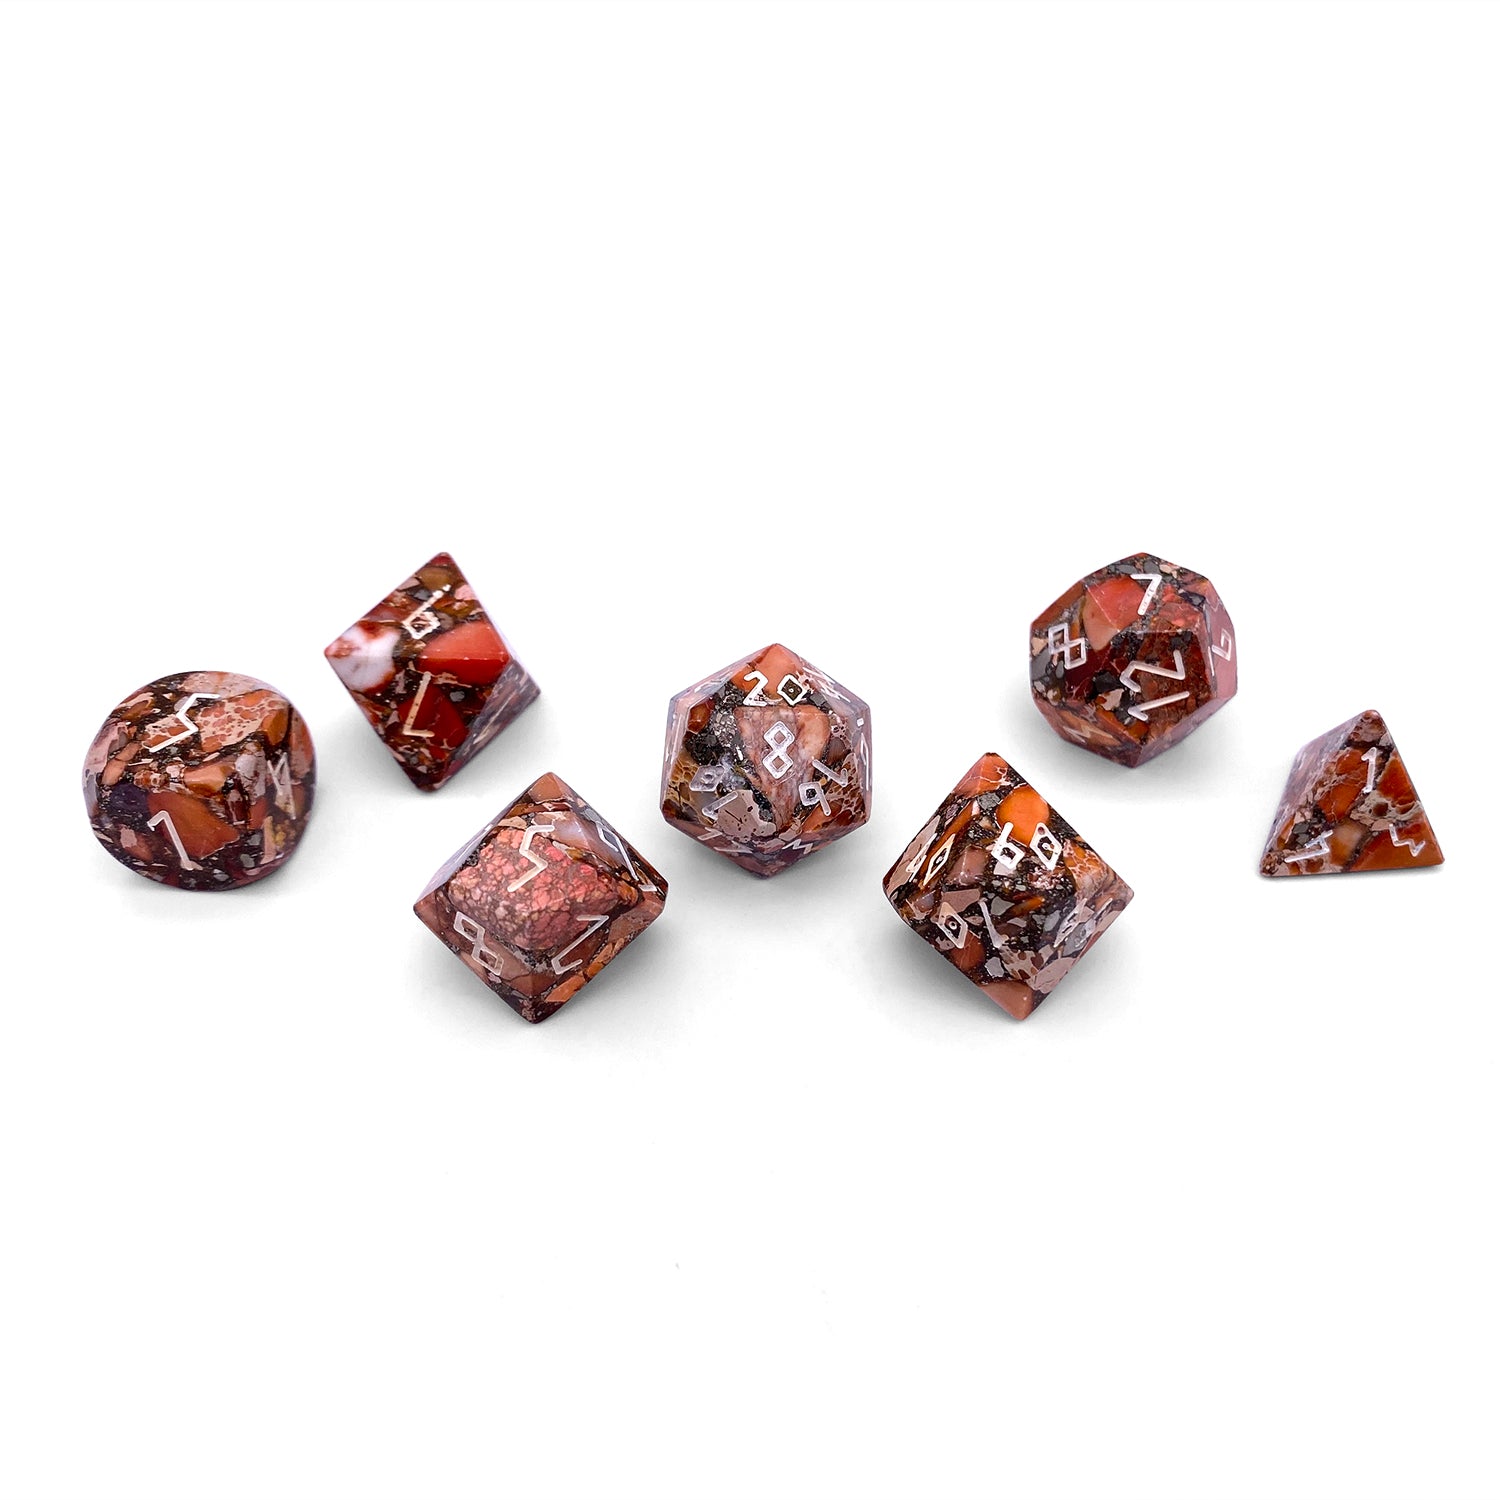 Bronzite Lapis with Orange Imperial Jasper - 7 Piece RPG Set TruStone Dice